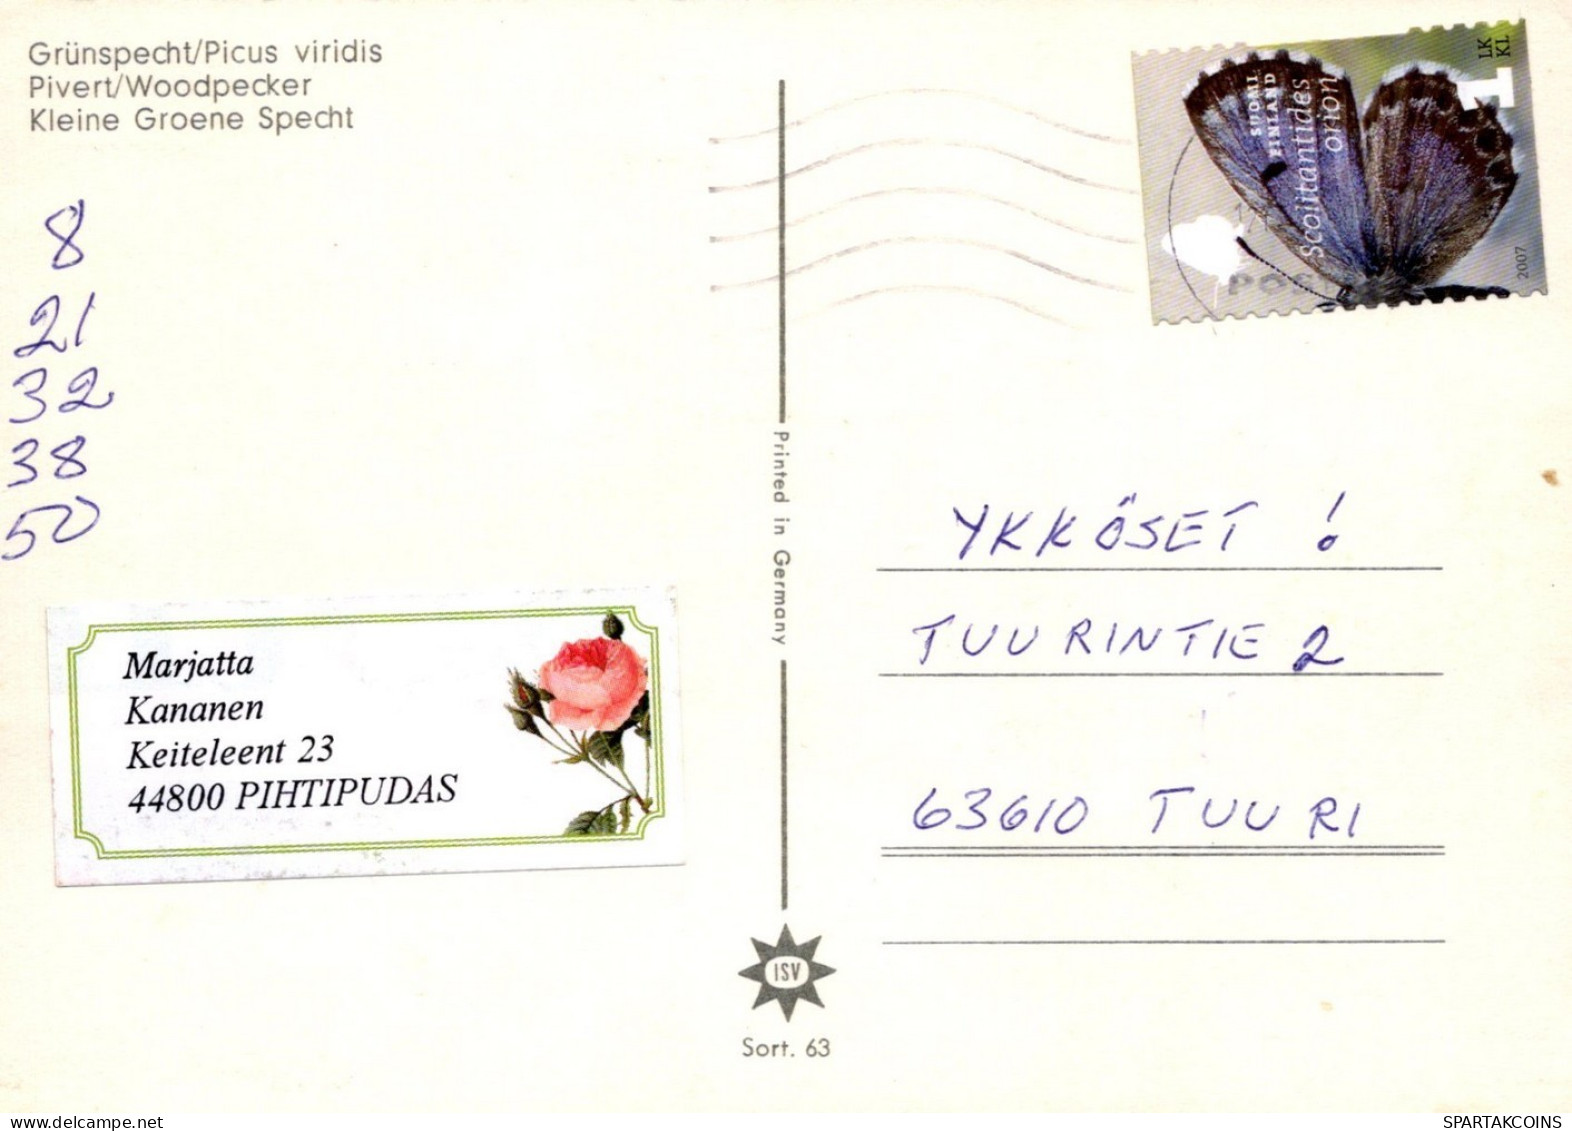 OISEAU Animaux Vintage Carte Postale CPSM #PAM713.FR - Pájaros